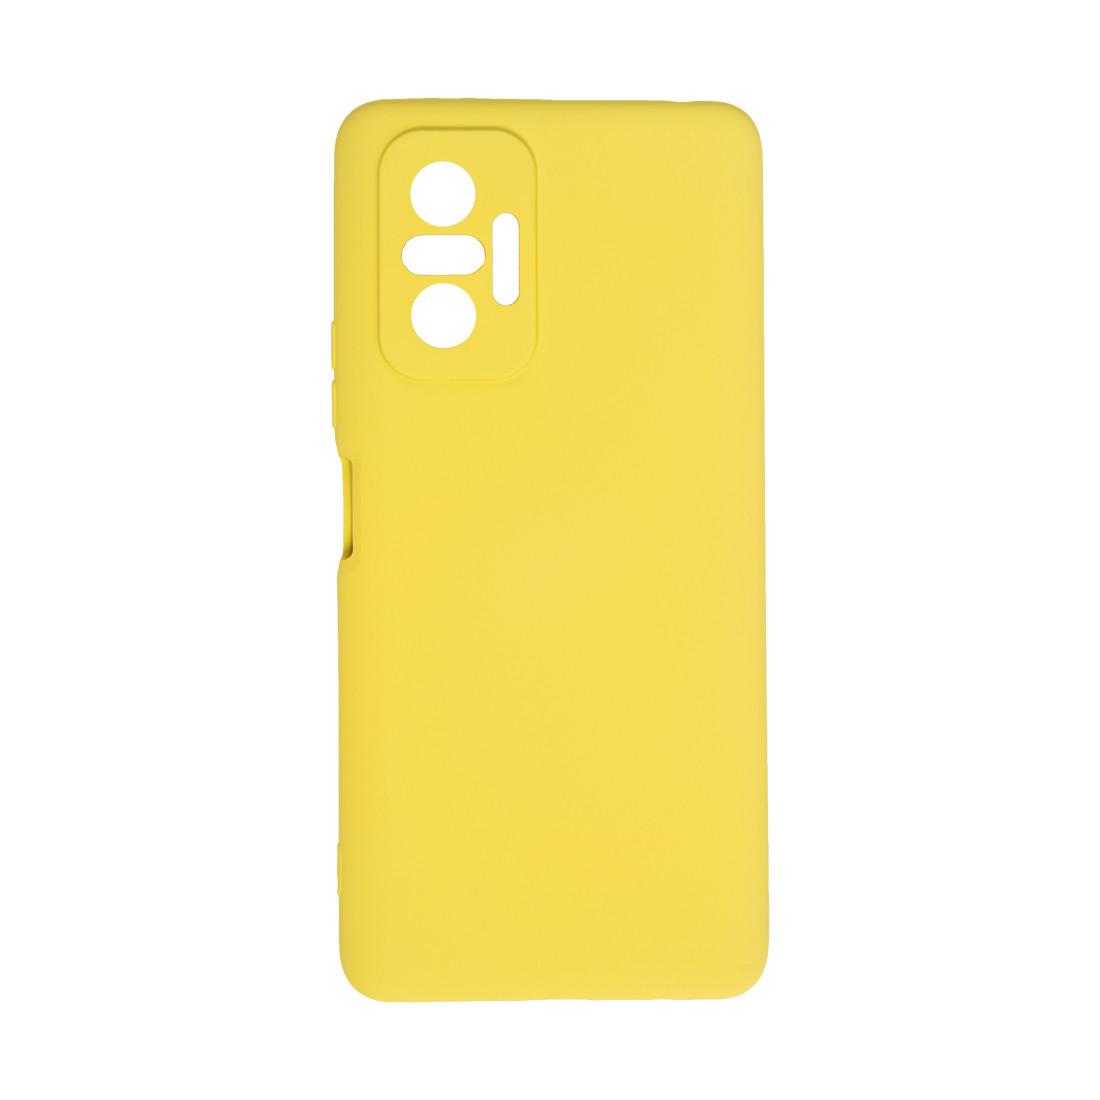 Чехол для телефона  X-Game  XG-HS32  для Redmi Note 10 Pro  Силиконовый  Жёлтый  Пол. пакет